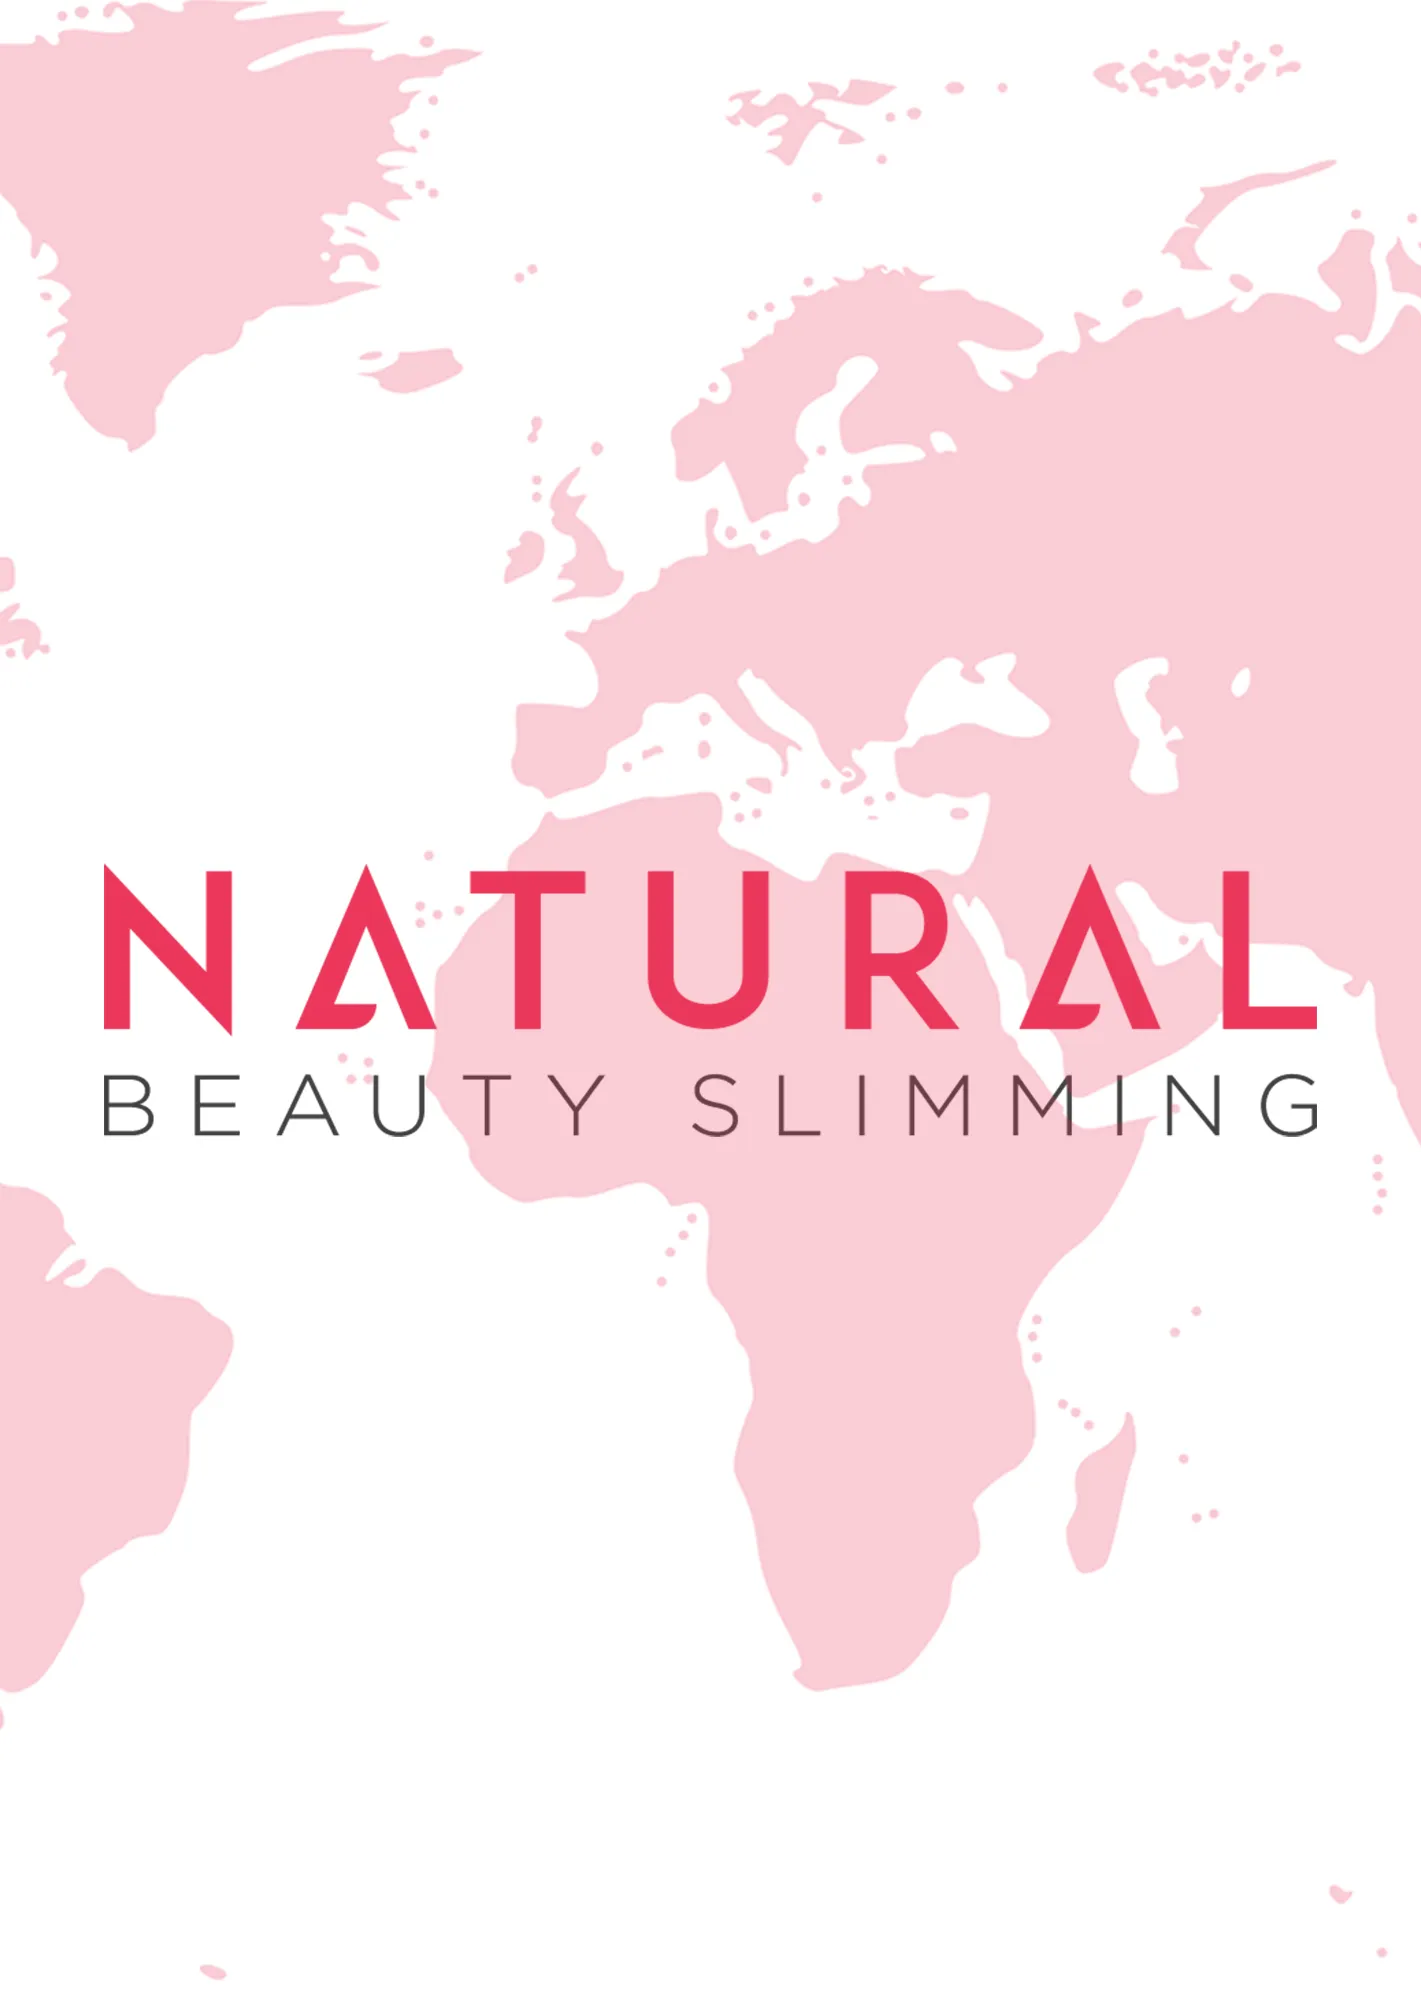  Natural Beauty Slimming Promo Codes